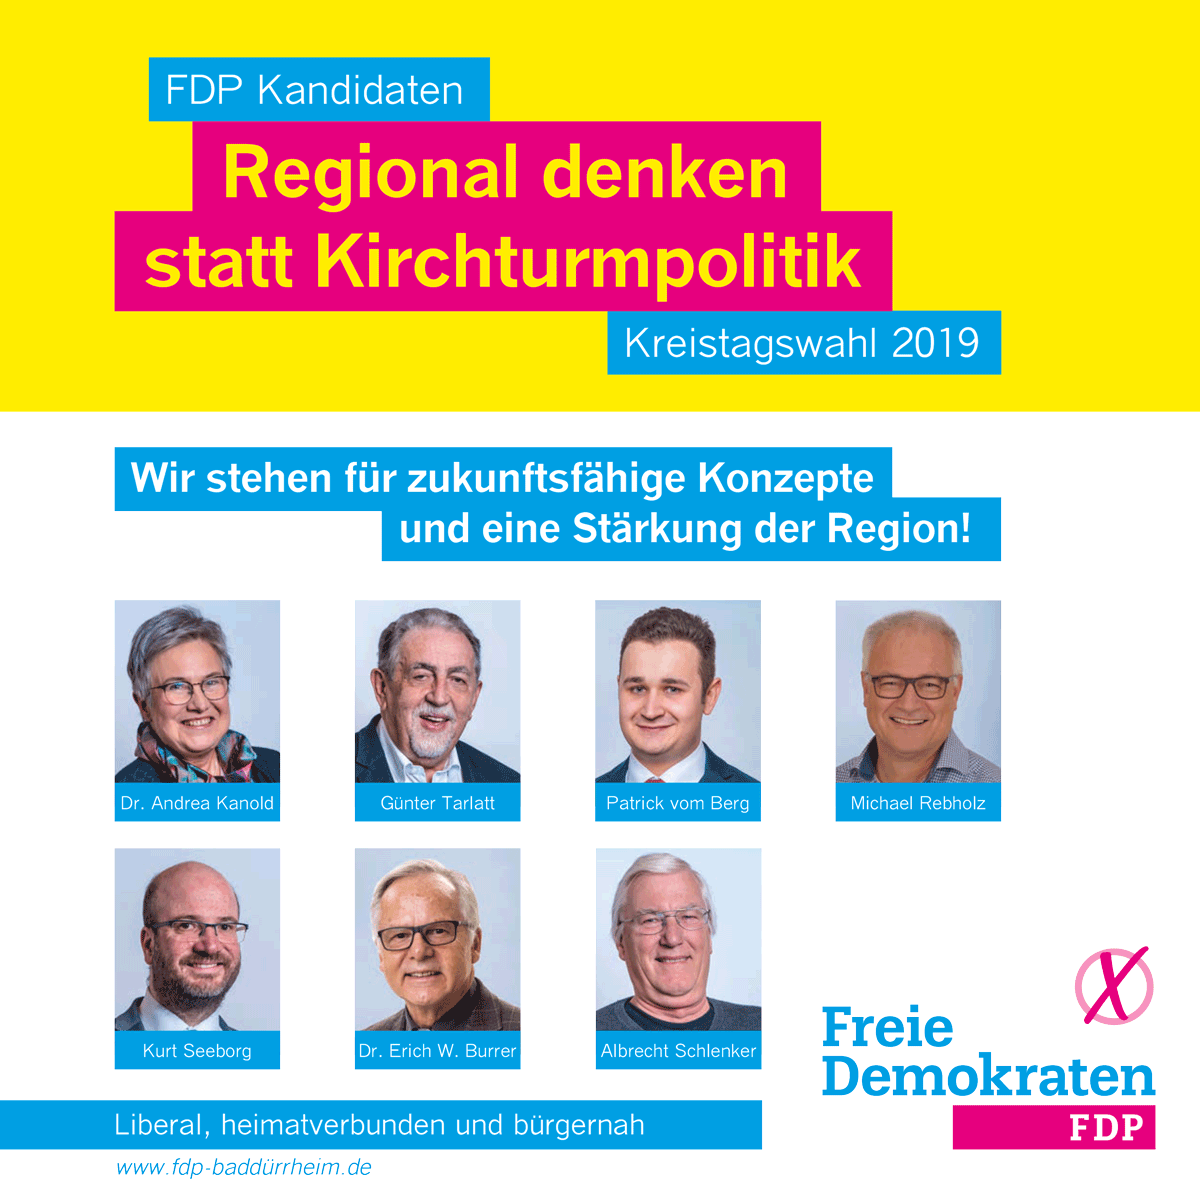 FDP Kandidaten Bad Dürrheim Kreistagswahl 2019